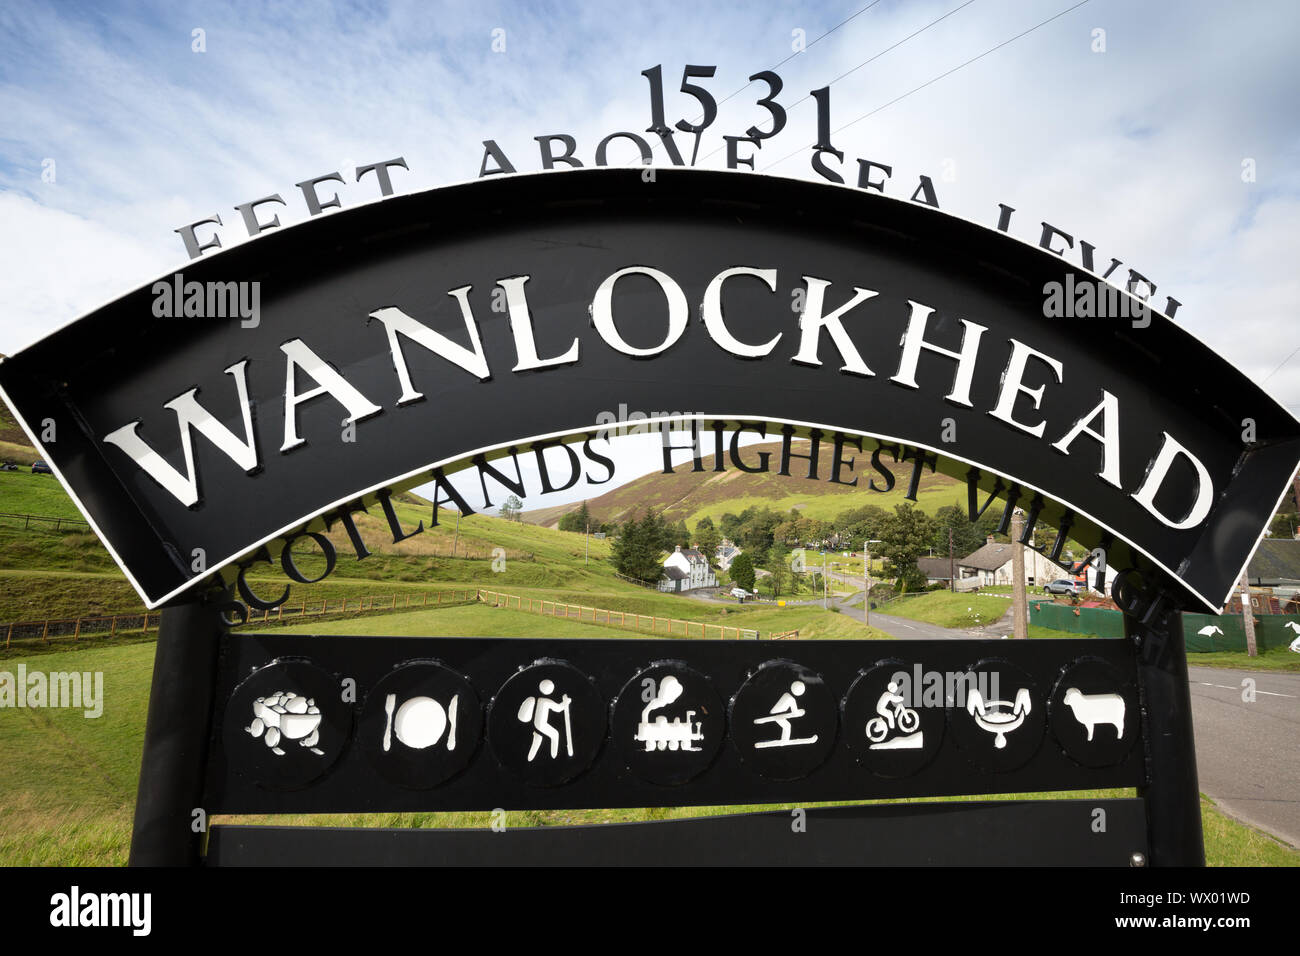 Wanlockhead le plus haut village de l'Écosse et le Royaume-Uni à 1531 pieds au-dessus du niveau de la mer Banque D'Images